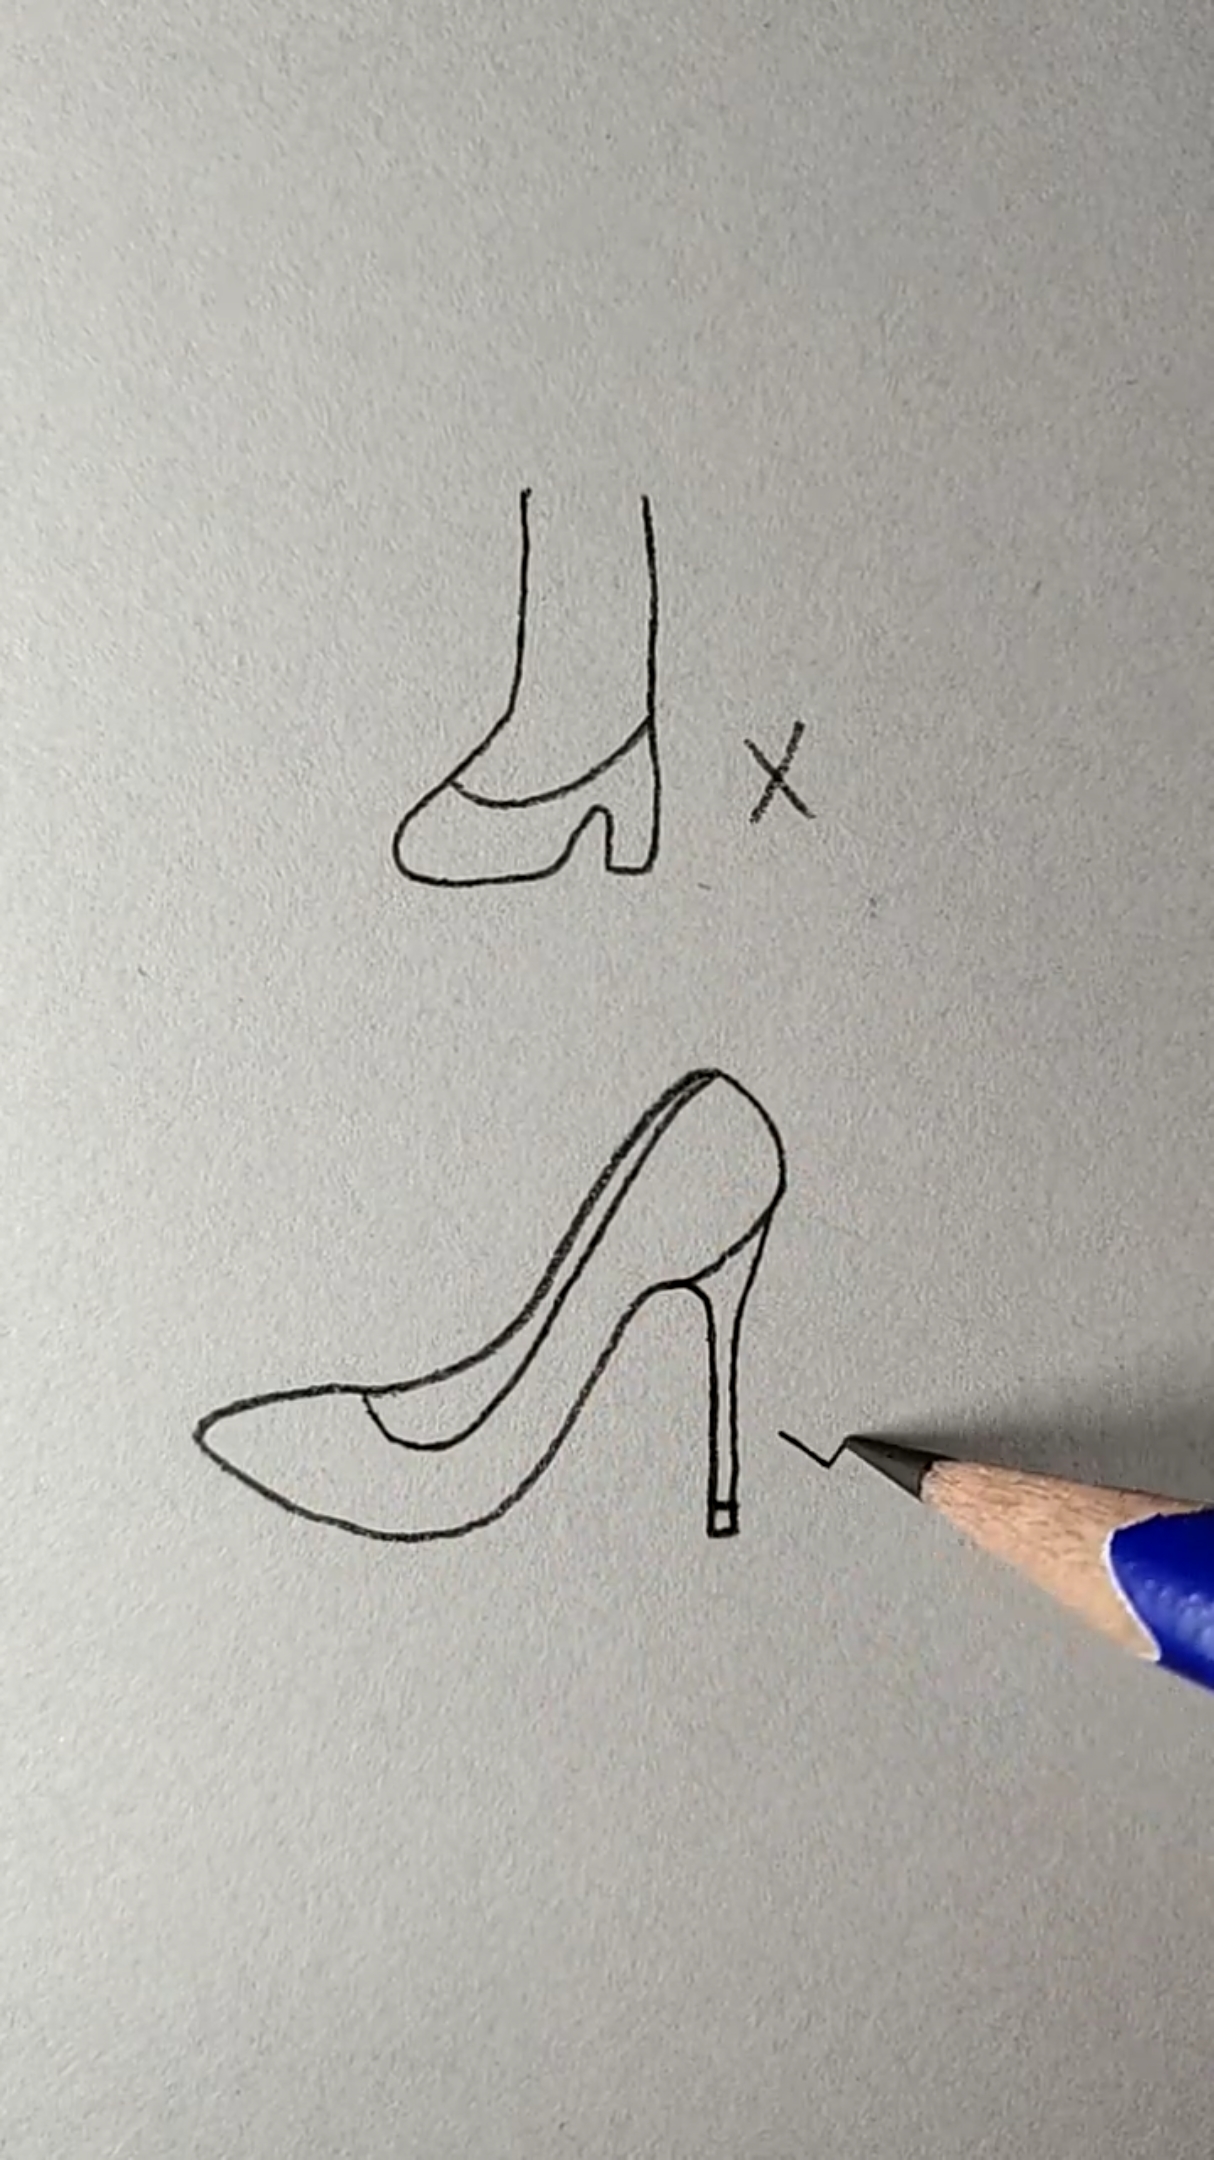 画鞋子少女高跟鞋图片